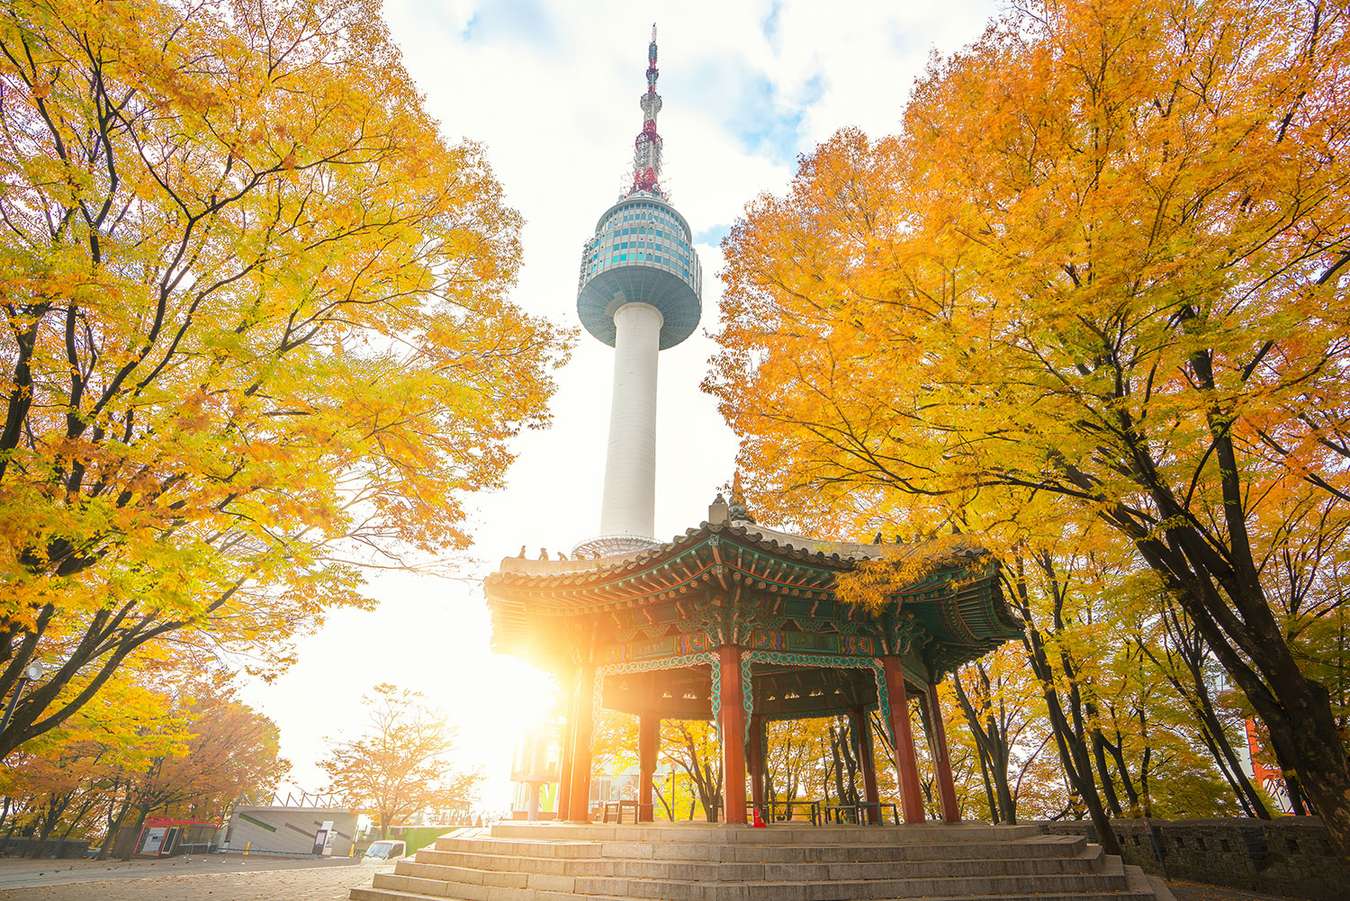 Tháng 10 đi du lịch ở đâu - Hàn Quốc